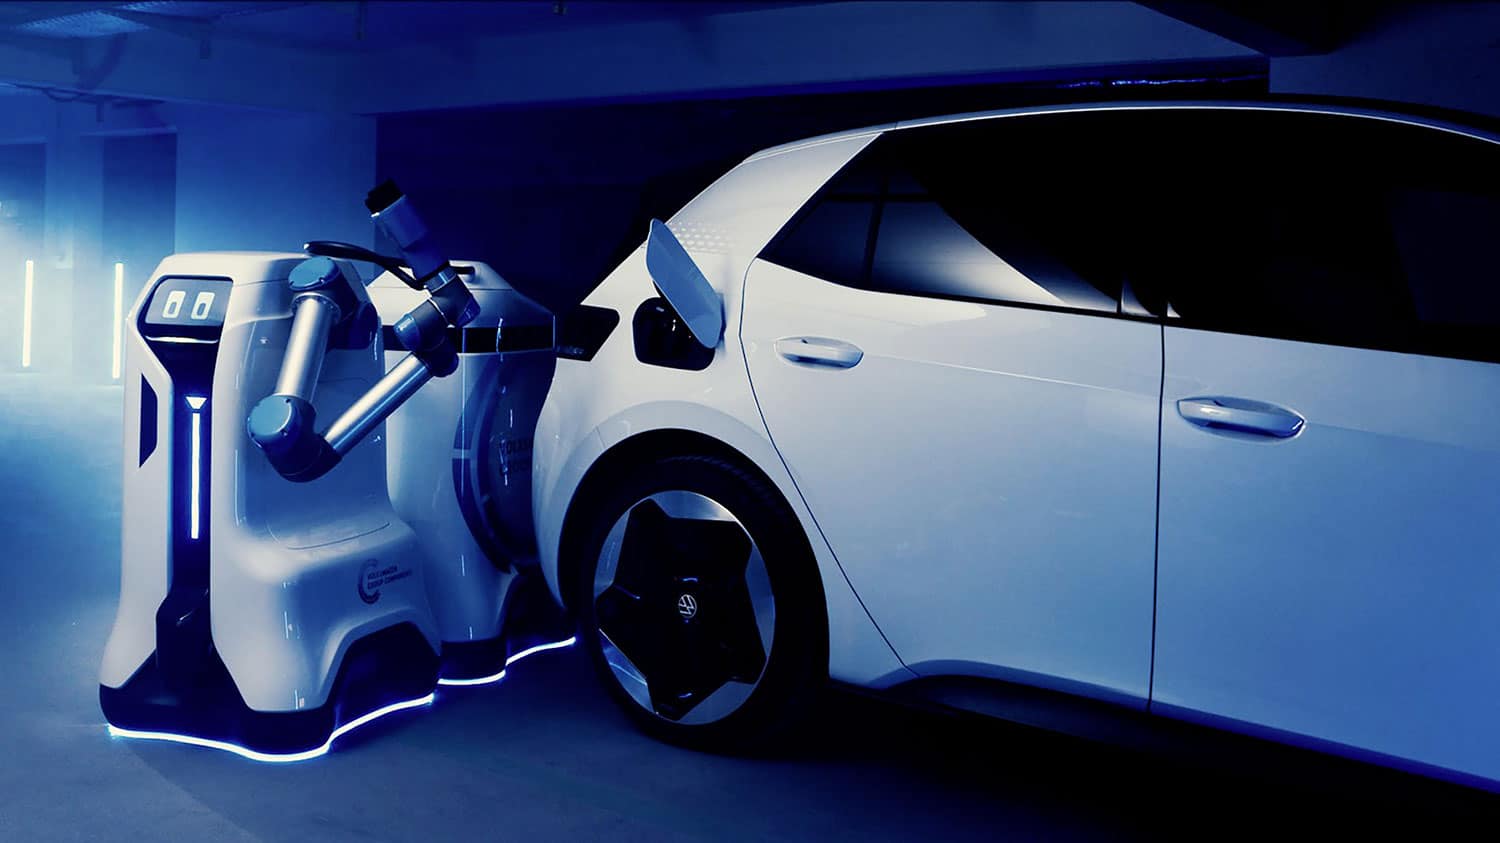 Chez Volkswagen, la charge autonome des voitures électriques devient réalité